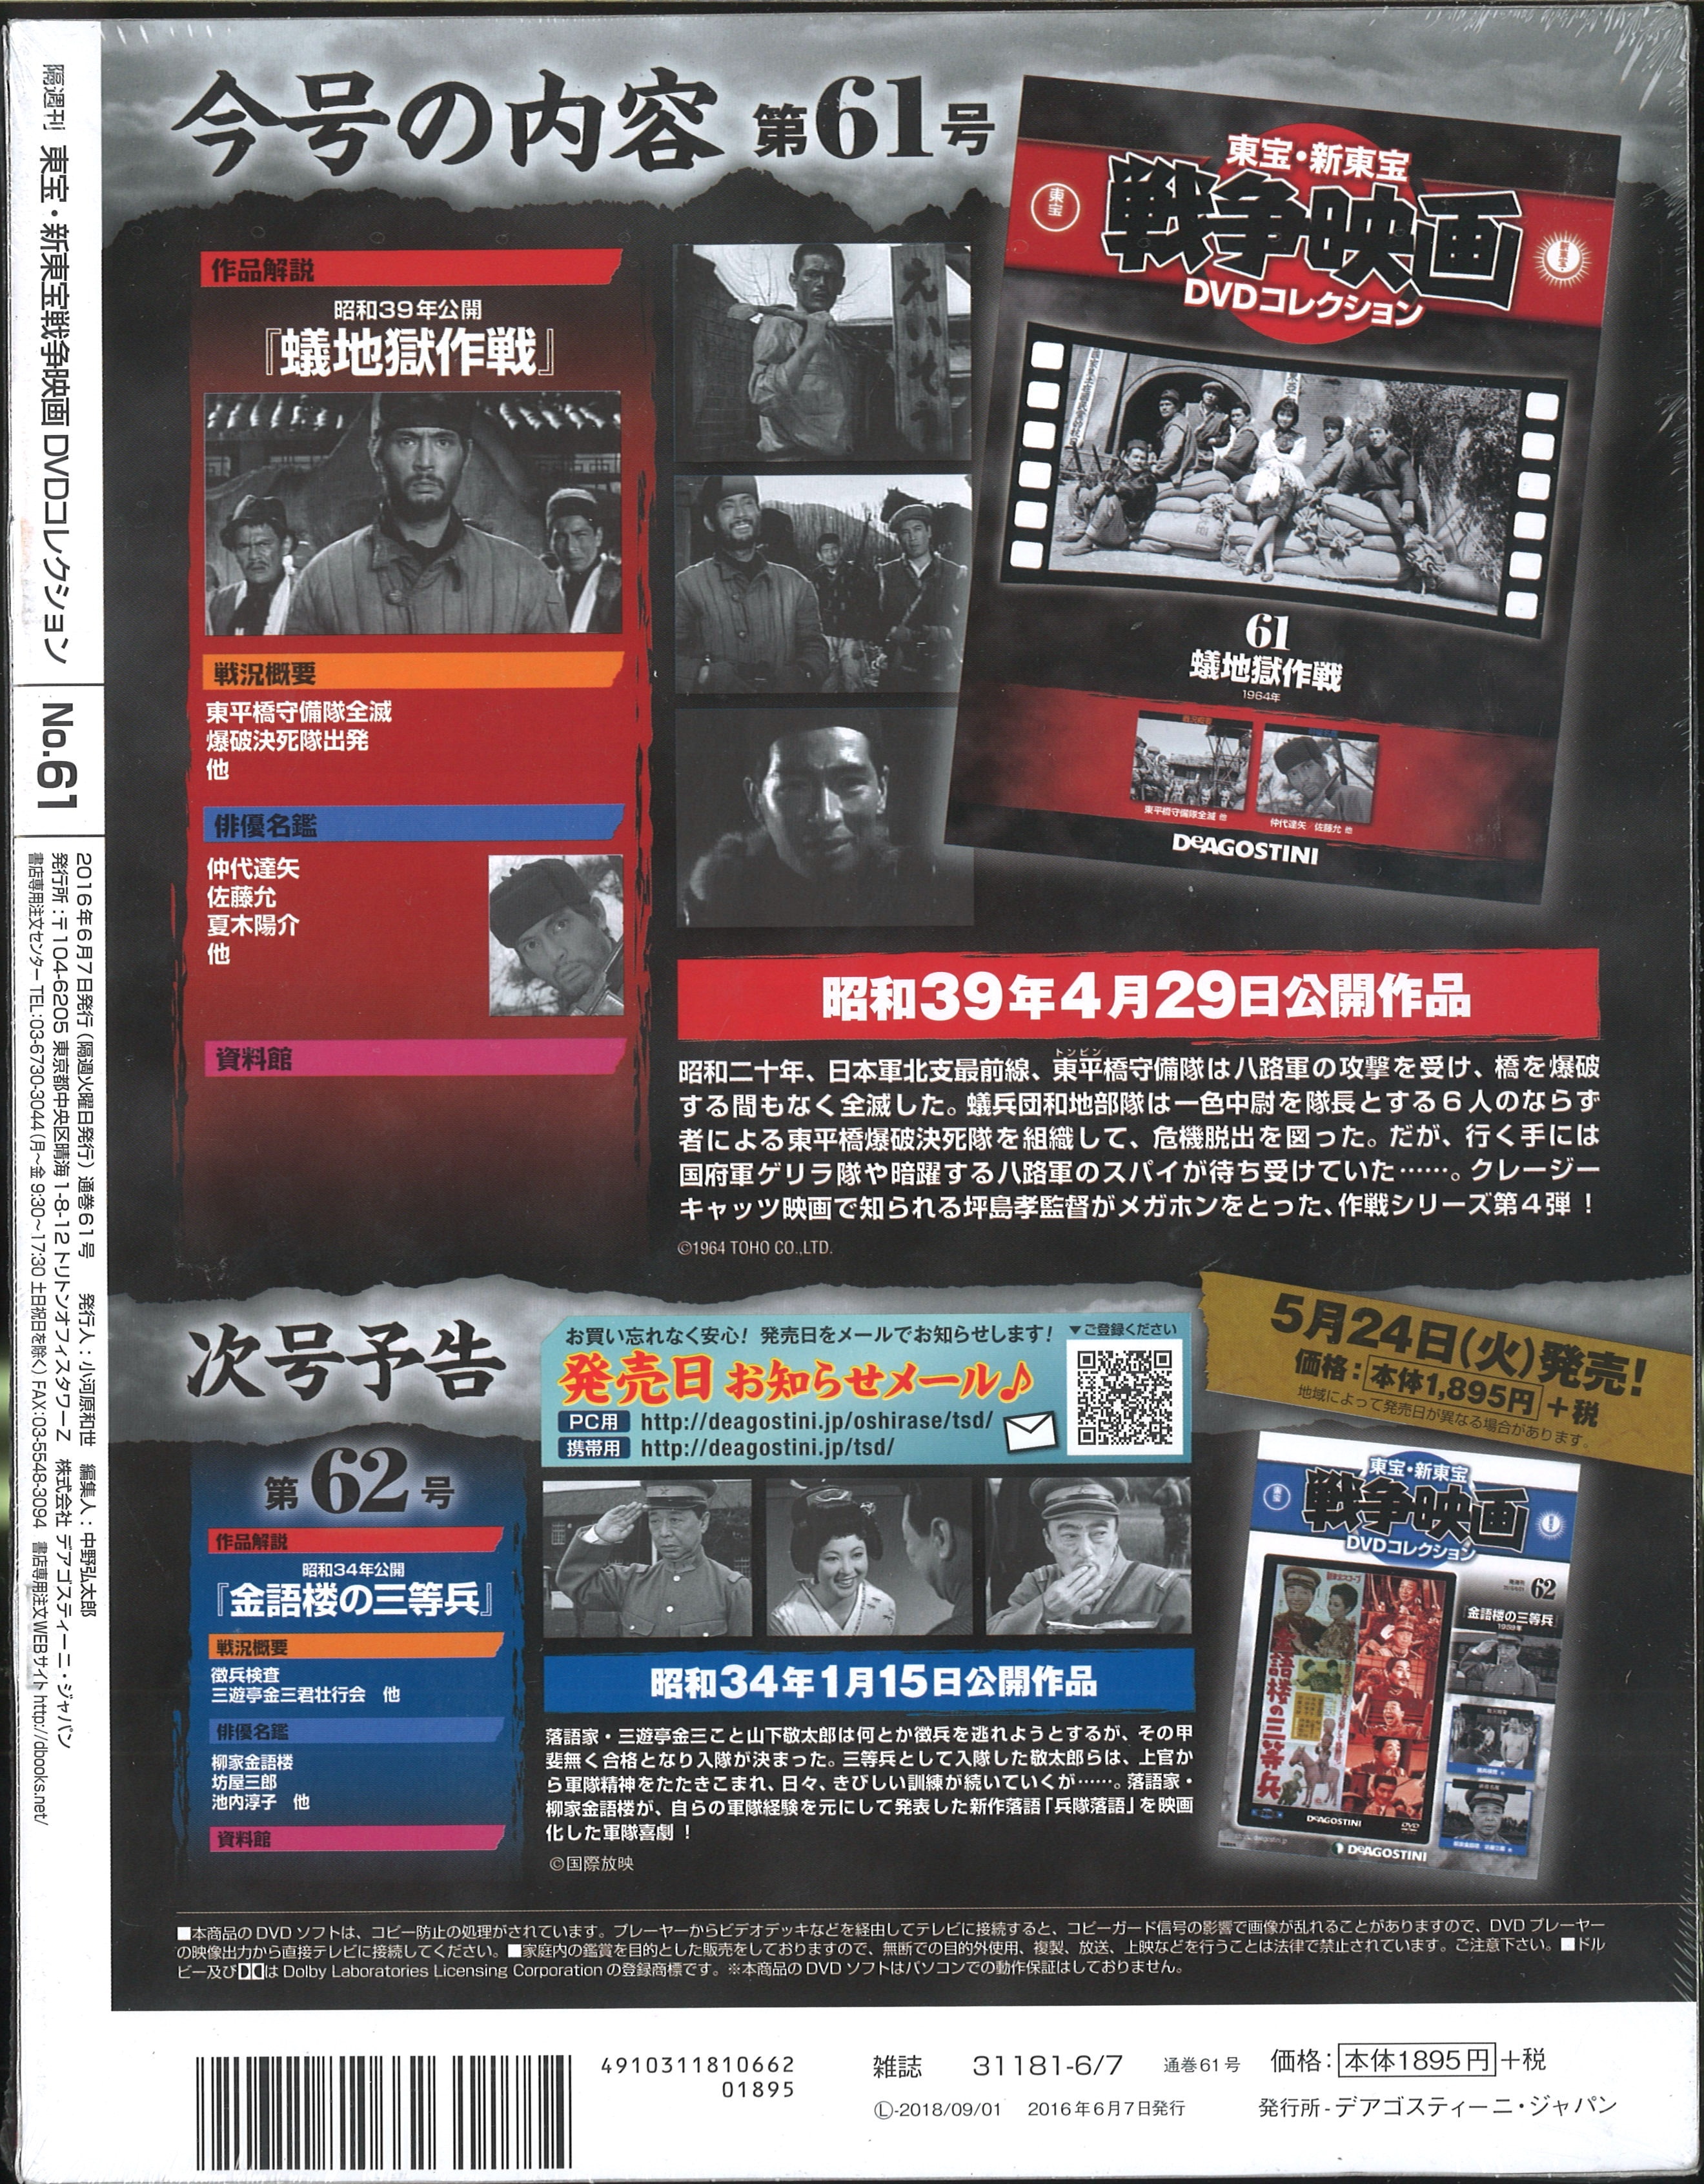 Dvd Toho Shin Toho War Movie Dvd Collection Jigoku Sakusen 61 Unopened Mandarake Online Shop